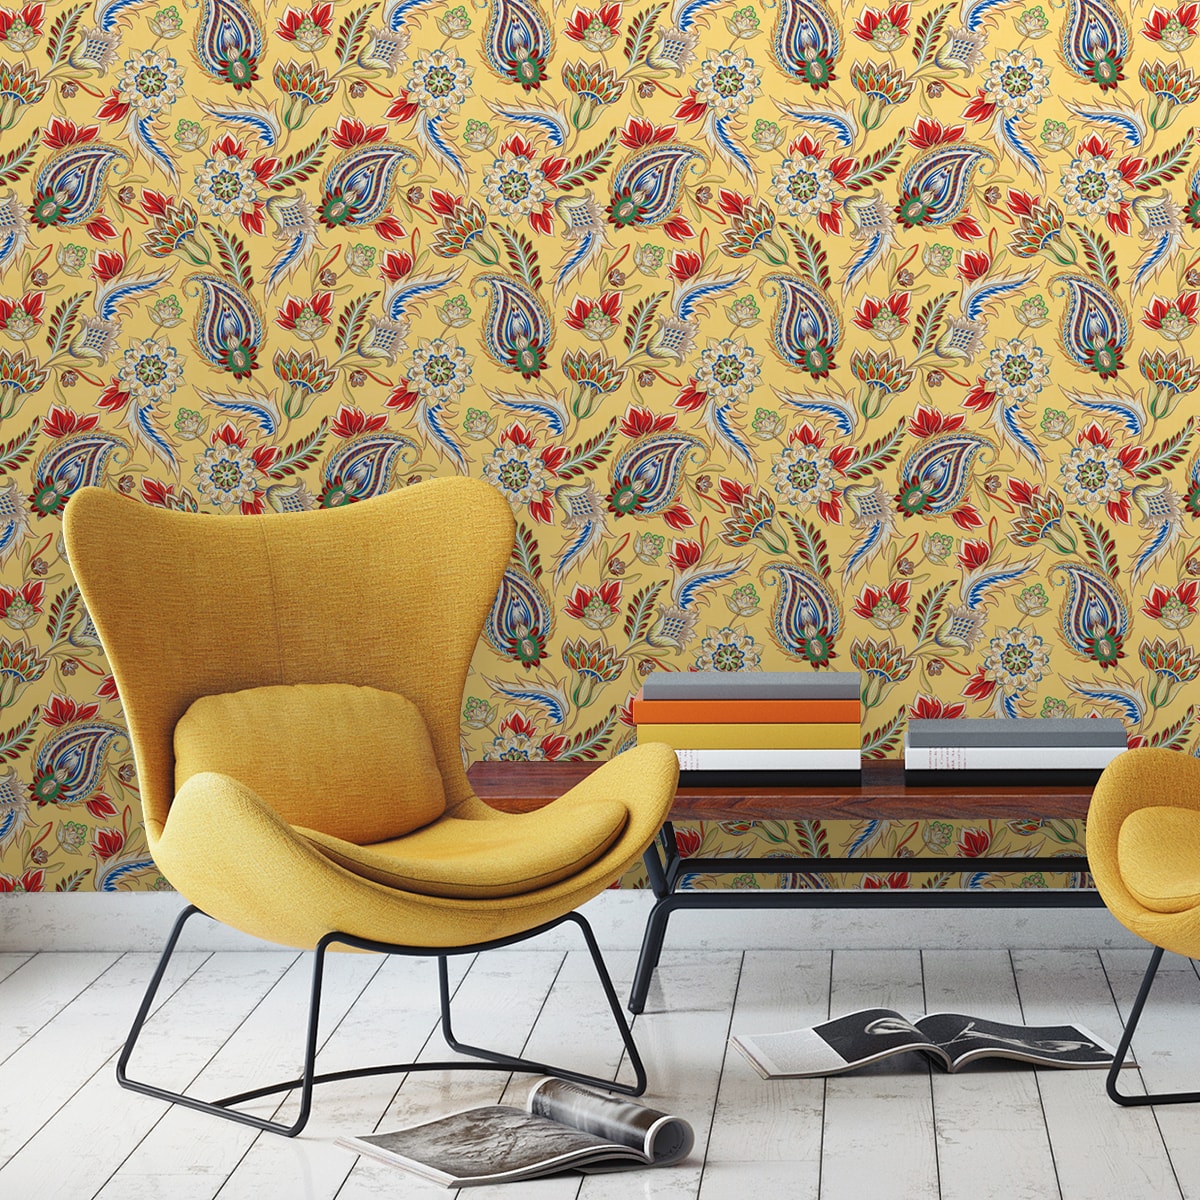 Wandtapete gelb: Gelbe edle Designer Tapete "Classic Paisley" mit dekorativem Blatt Muster (klein) angepasst an Schöner Wohnen Wandfarben